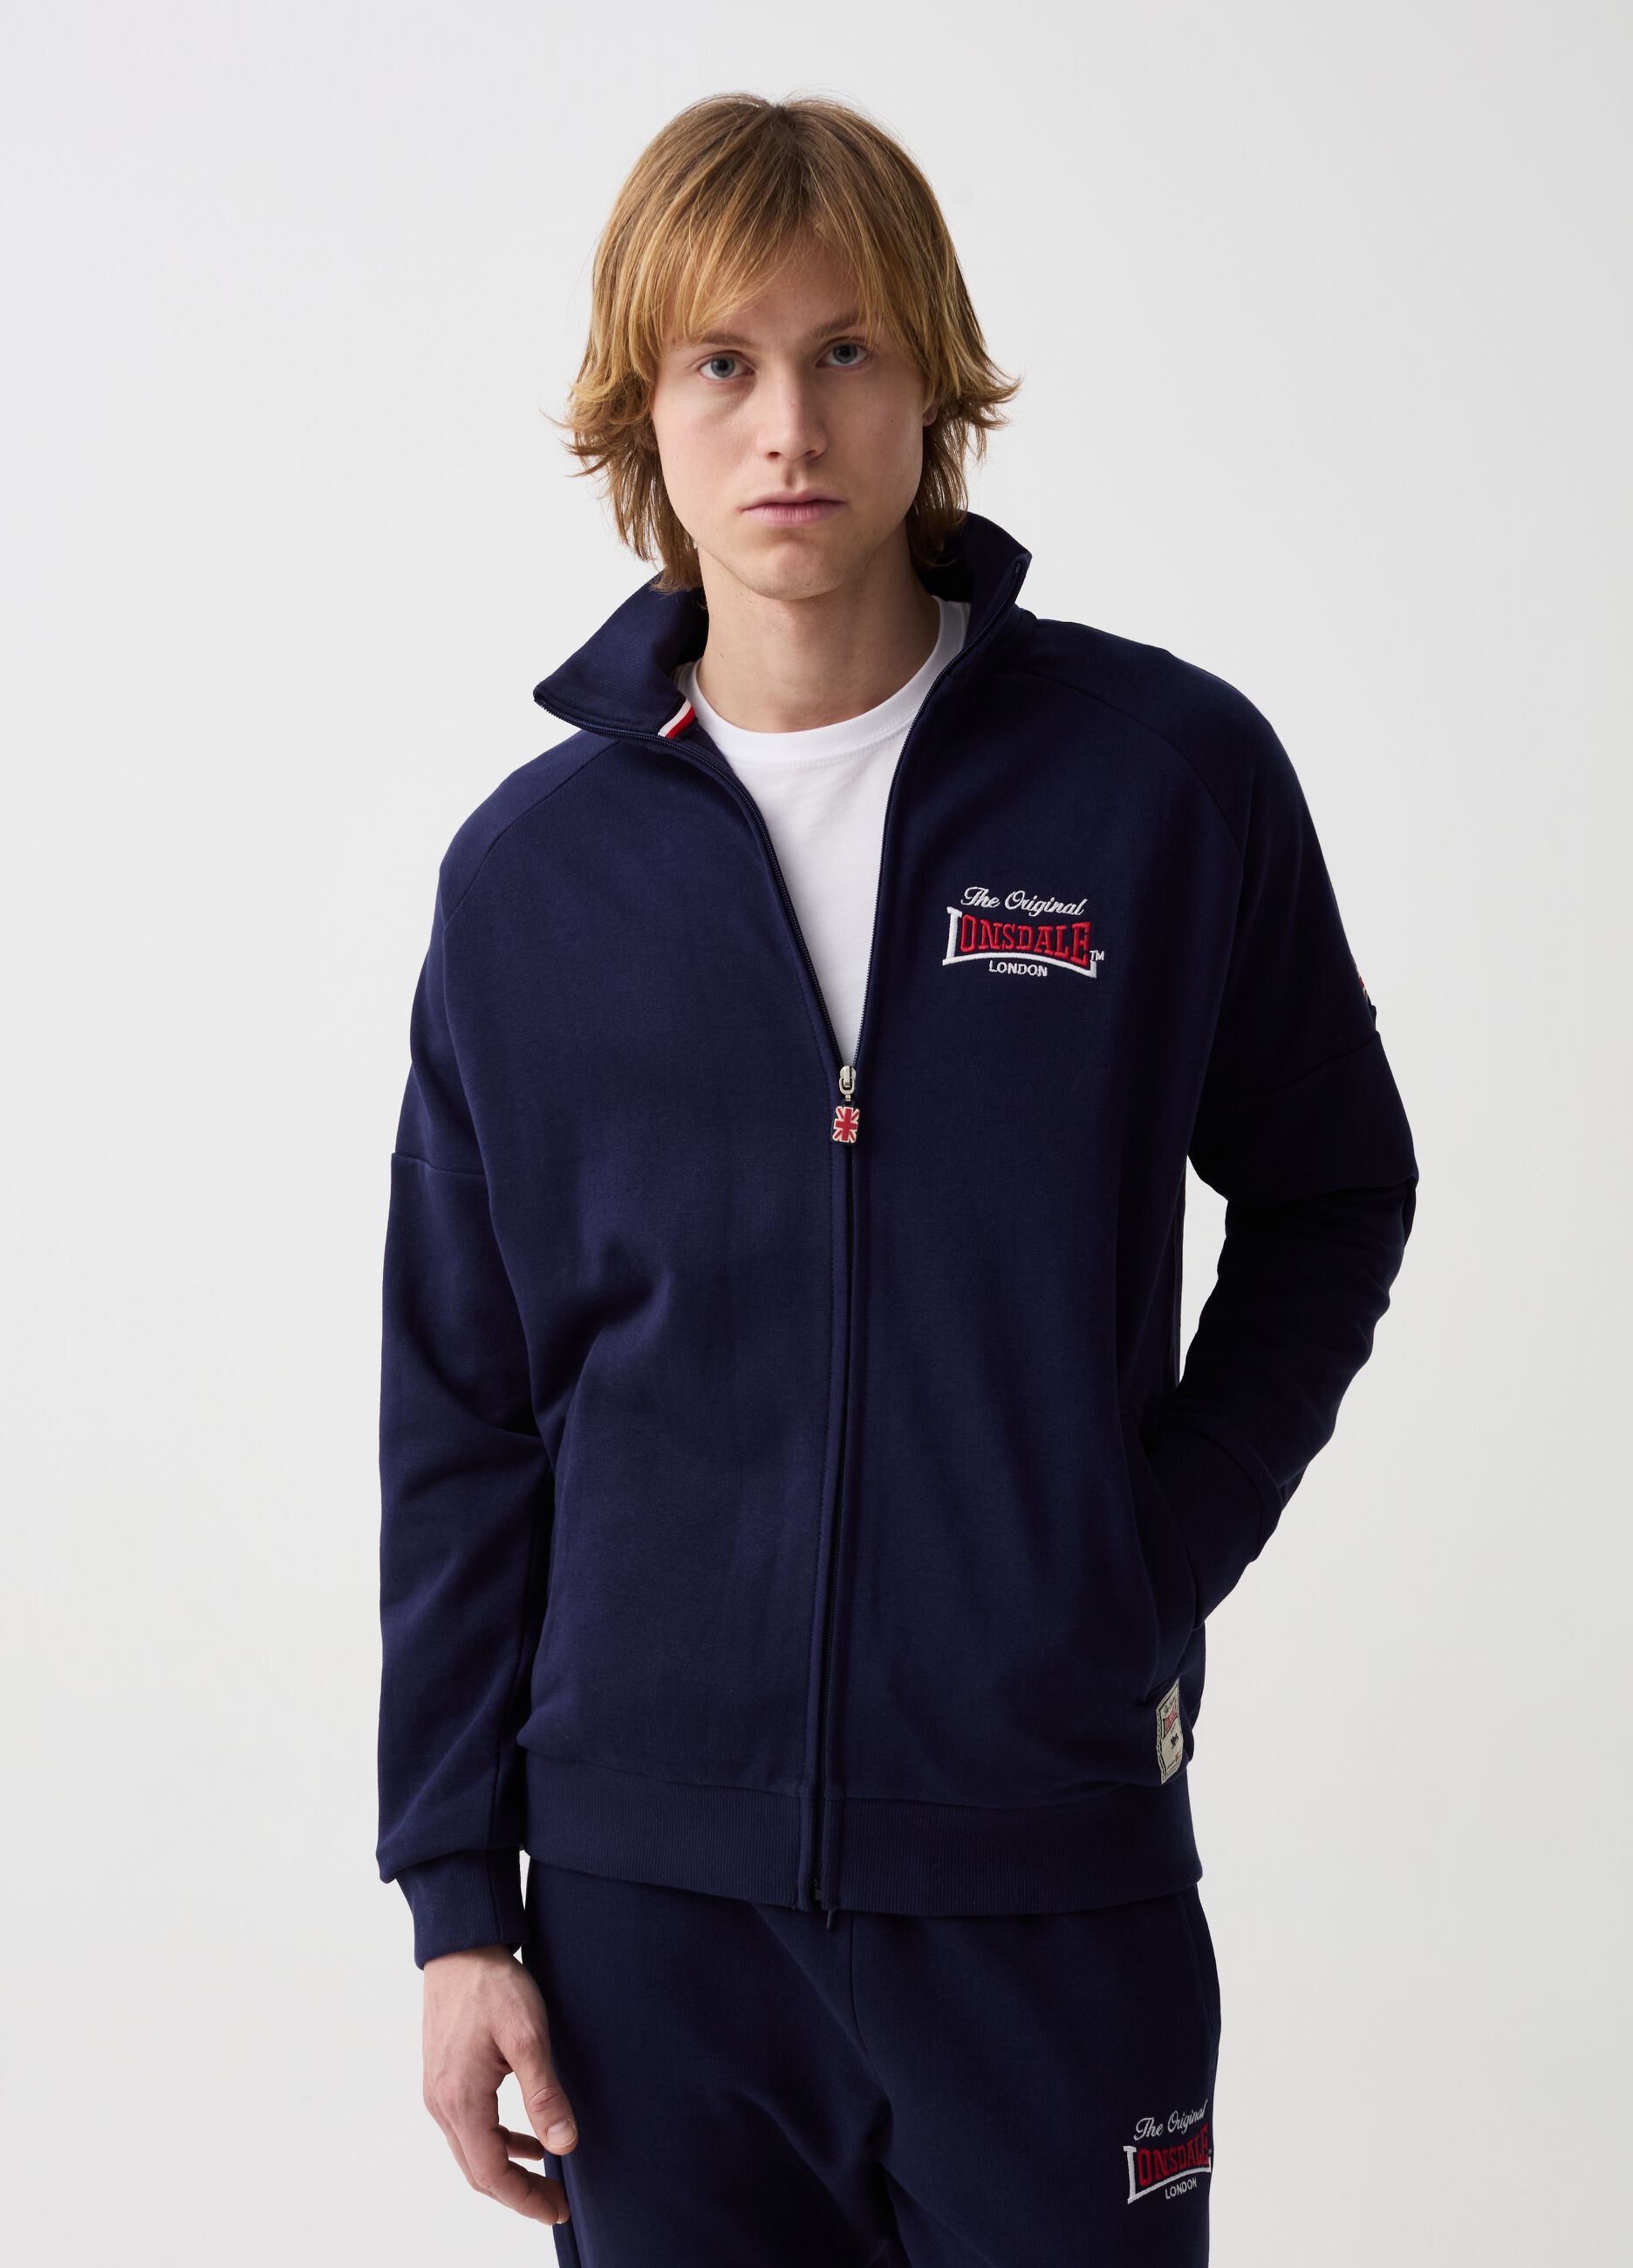 Full-zip fleece sweatshirt with logo embroidery